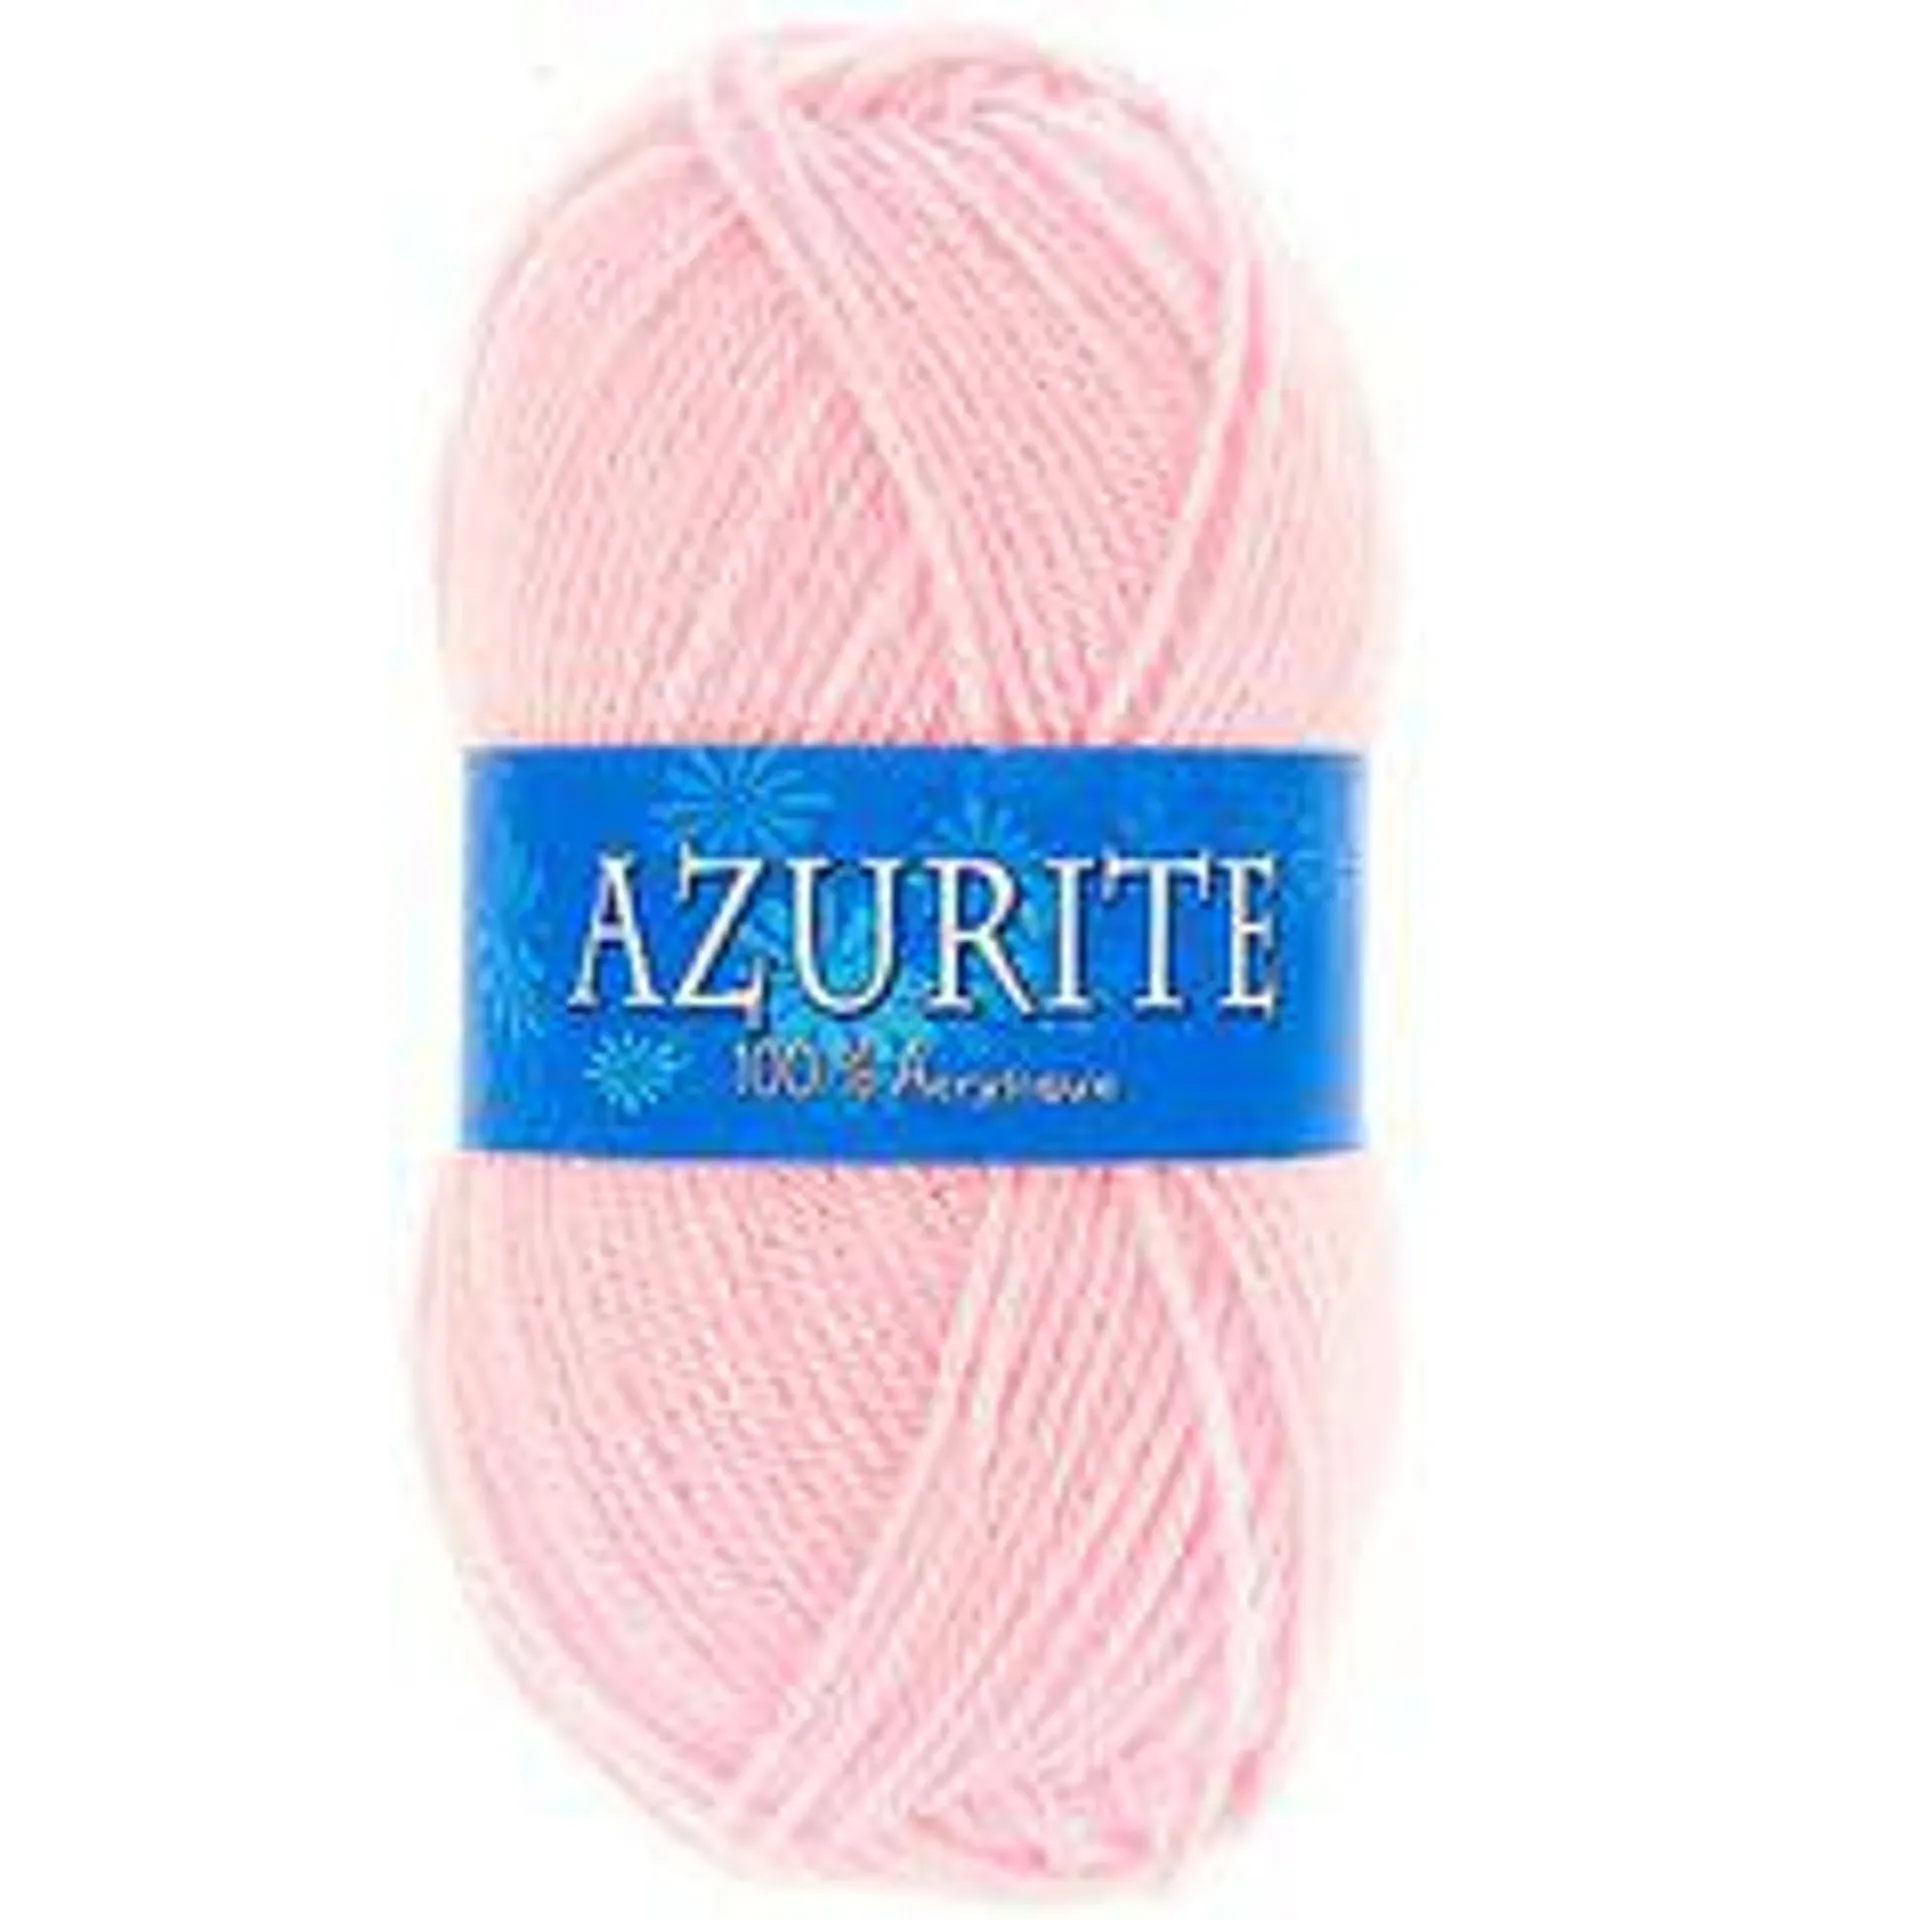 Lot de 10 pelotes de laine AZURITE rose pâle 50g